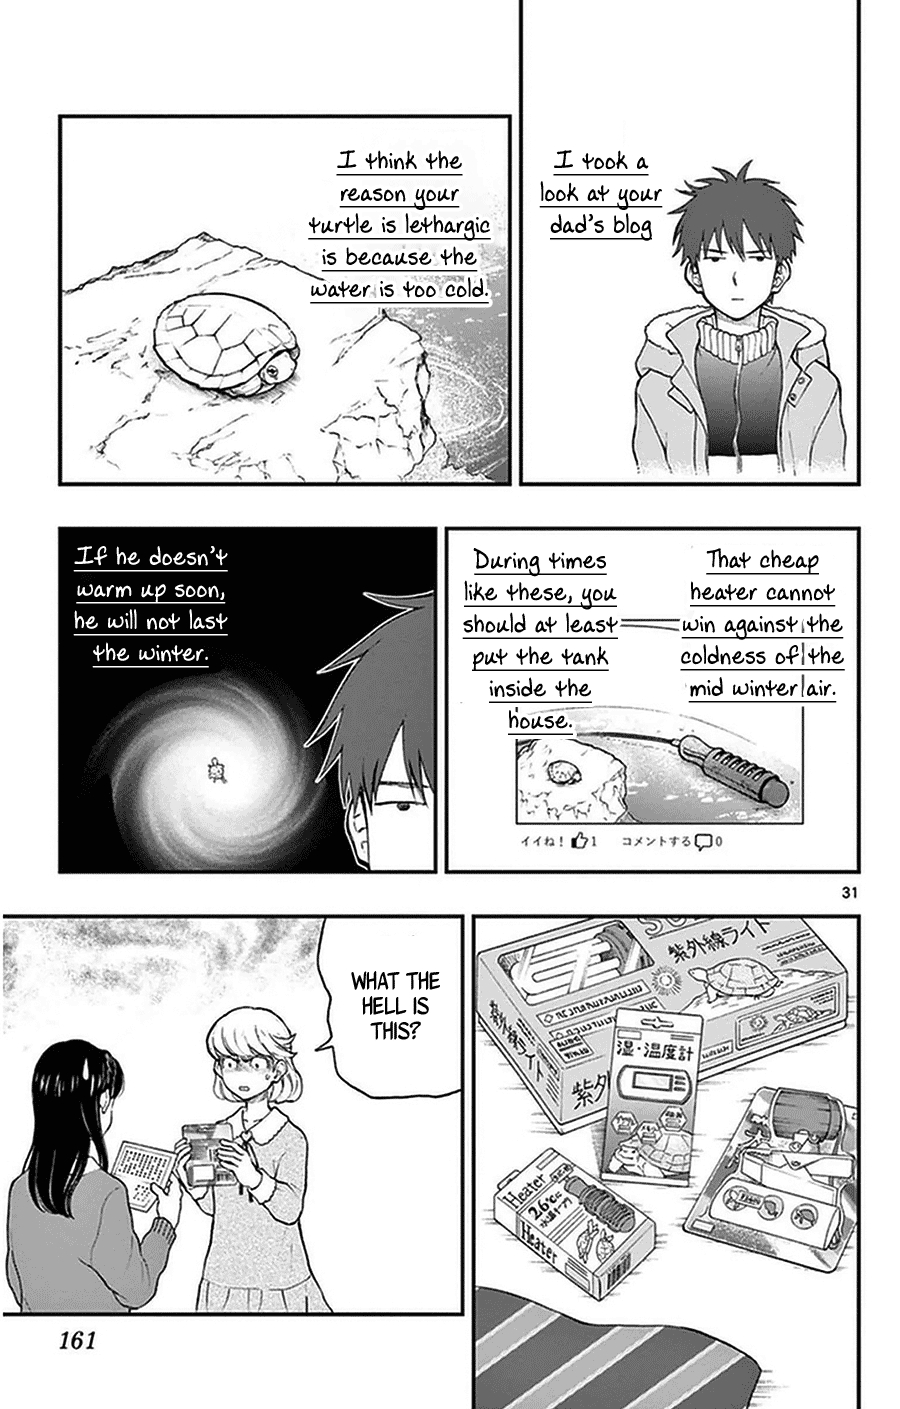 Yugami kun ni wa Tomodachi ga Inai Vol. 8 Ch. 41 Watanuki san's Big Plan